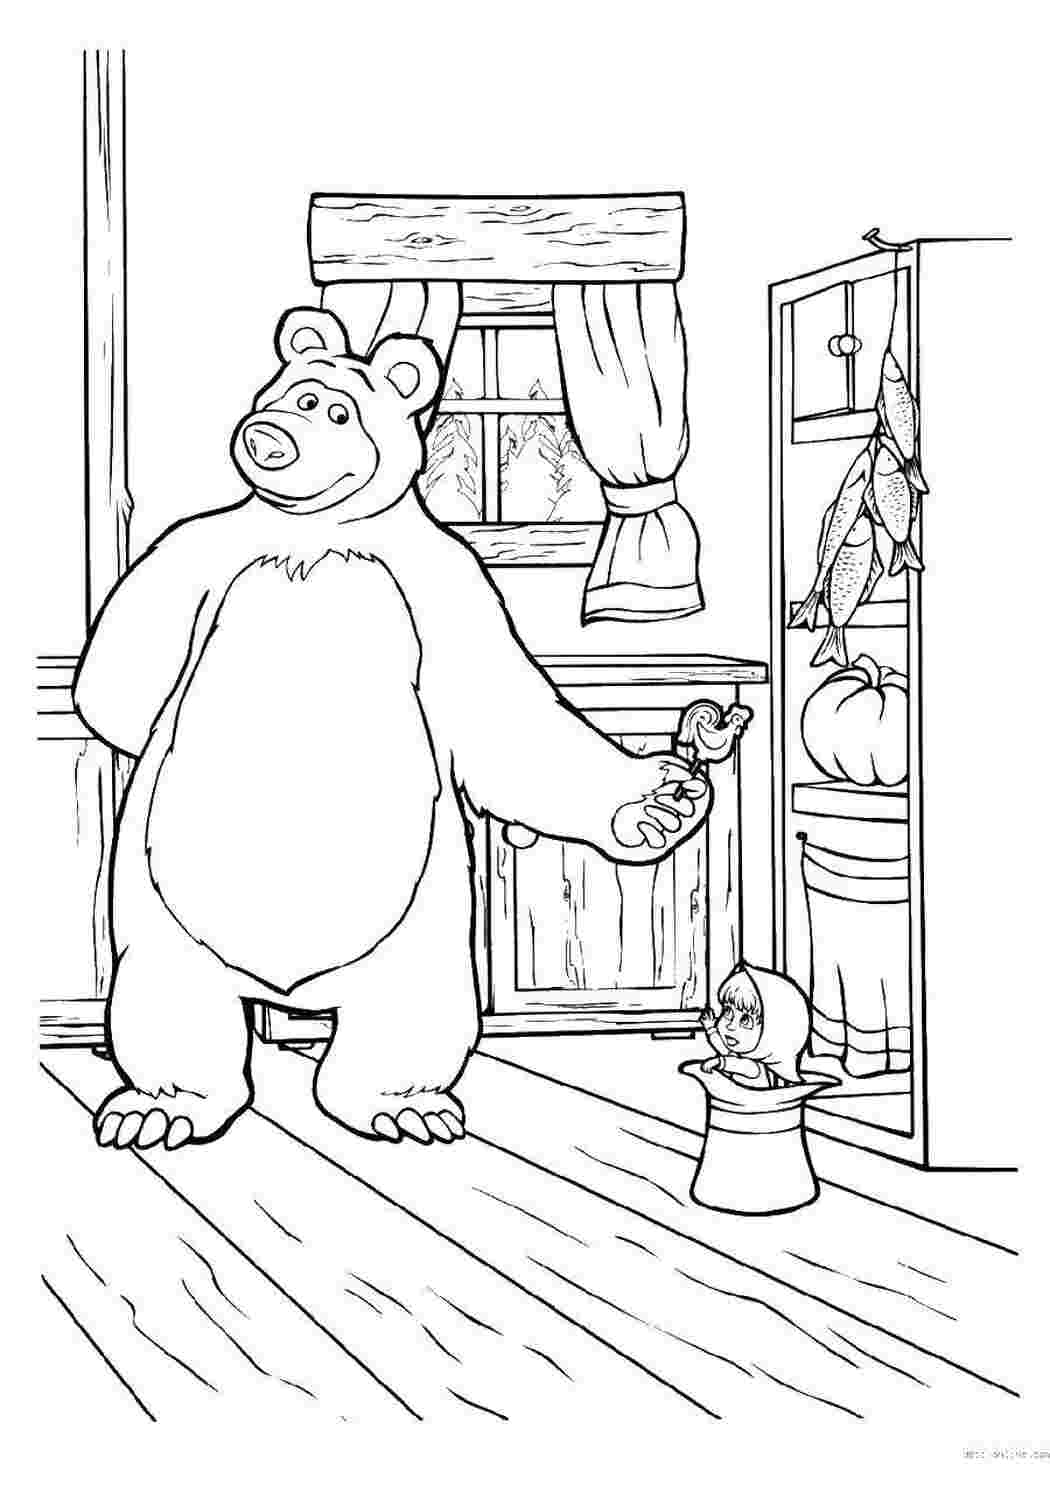 Раскраски Раскраски для детей про озорную Машу из мультфильма Маша и медведь  Медведь дает конфету маше